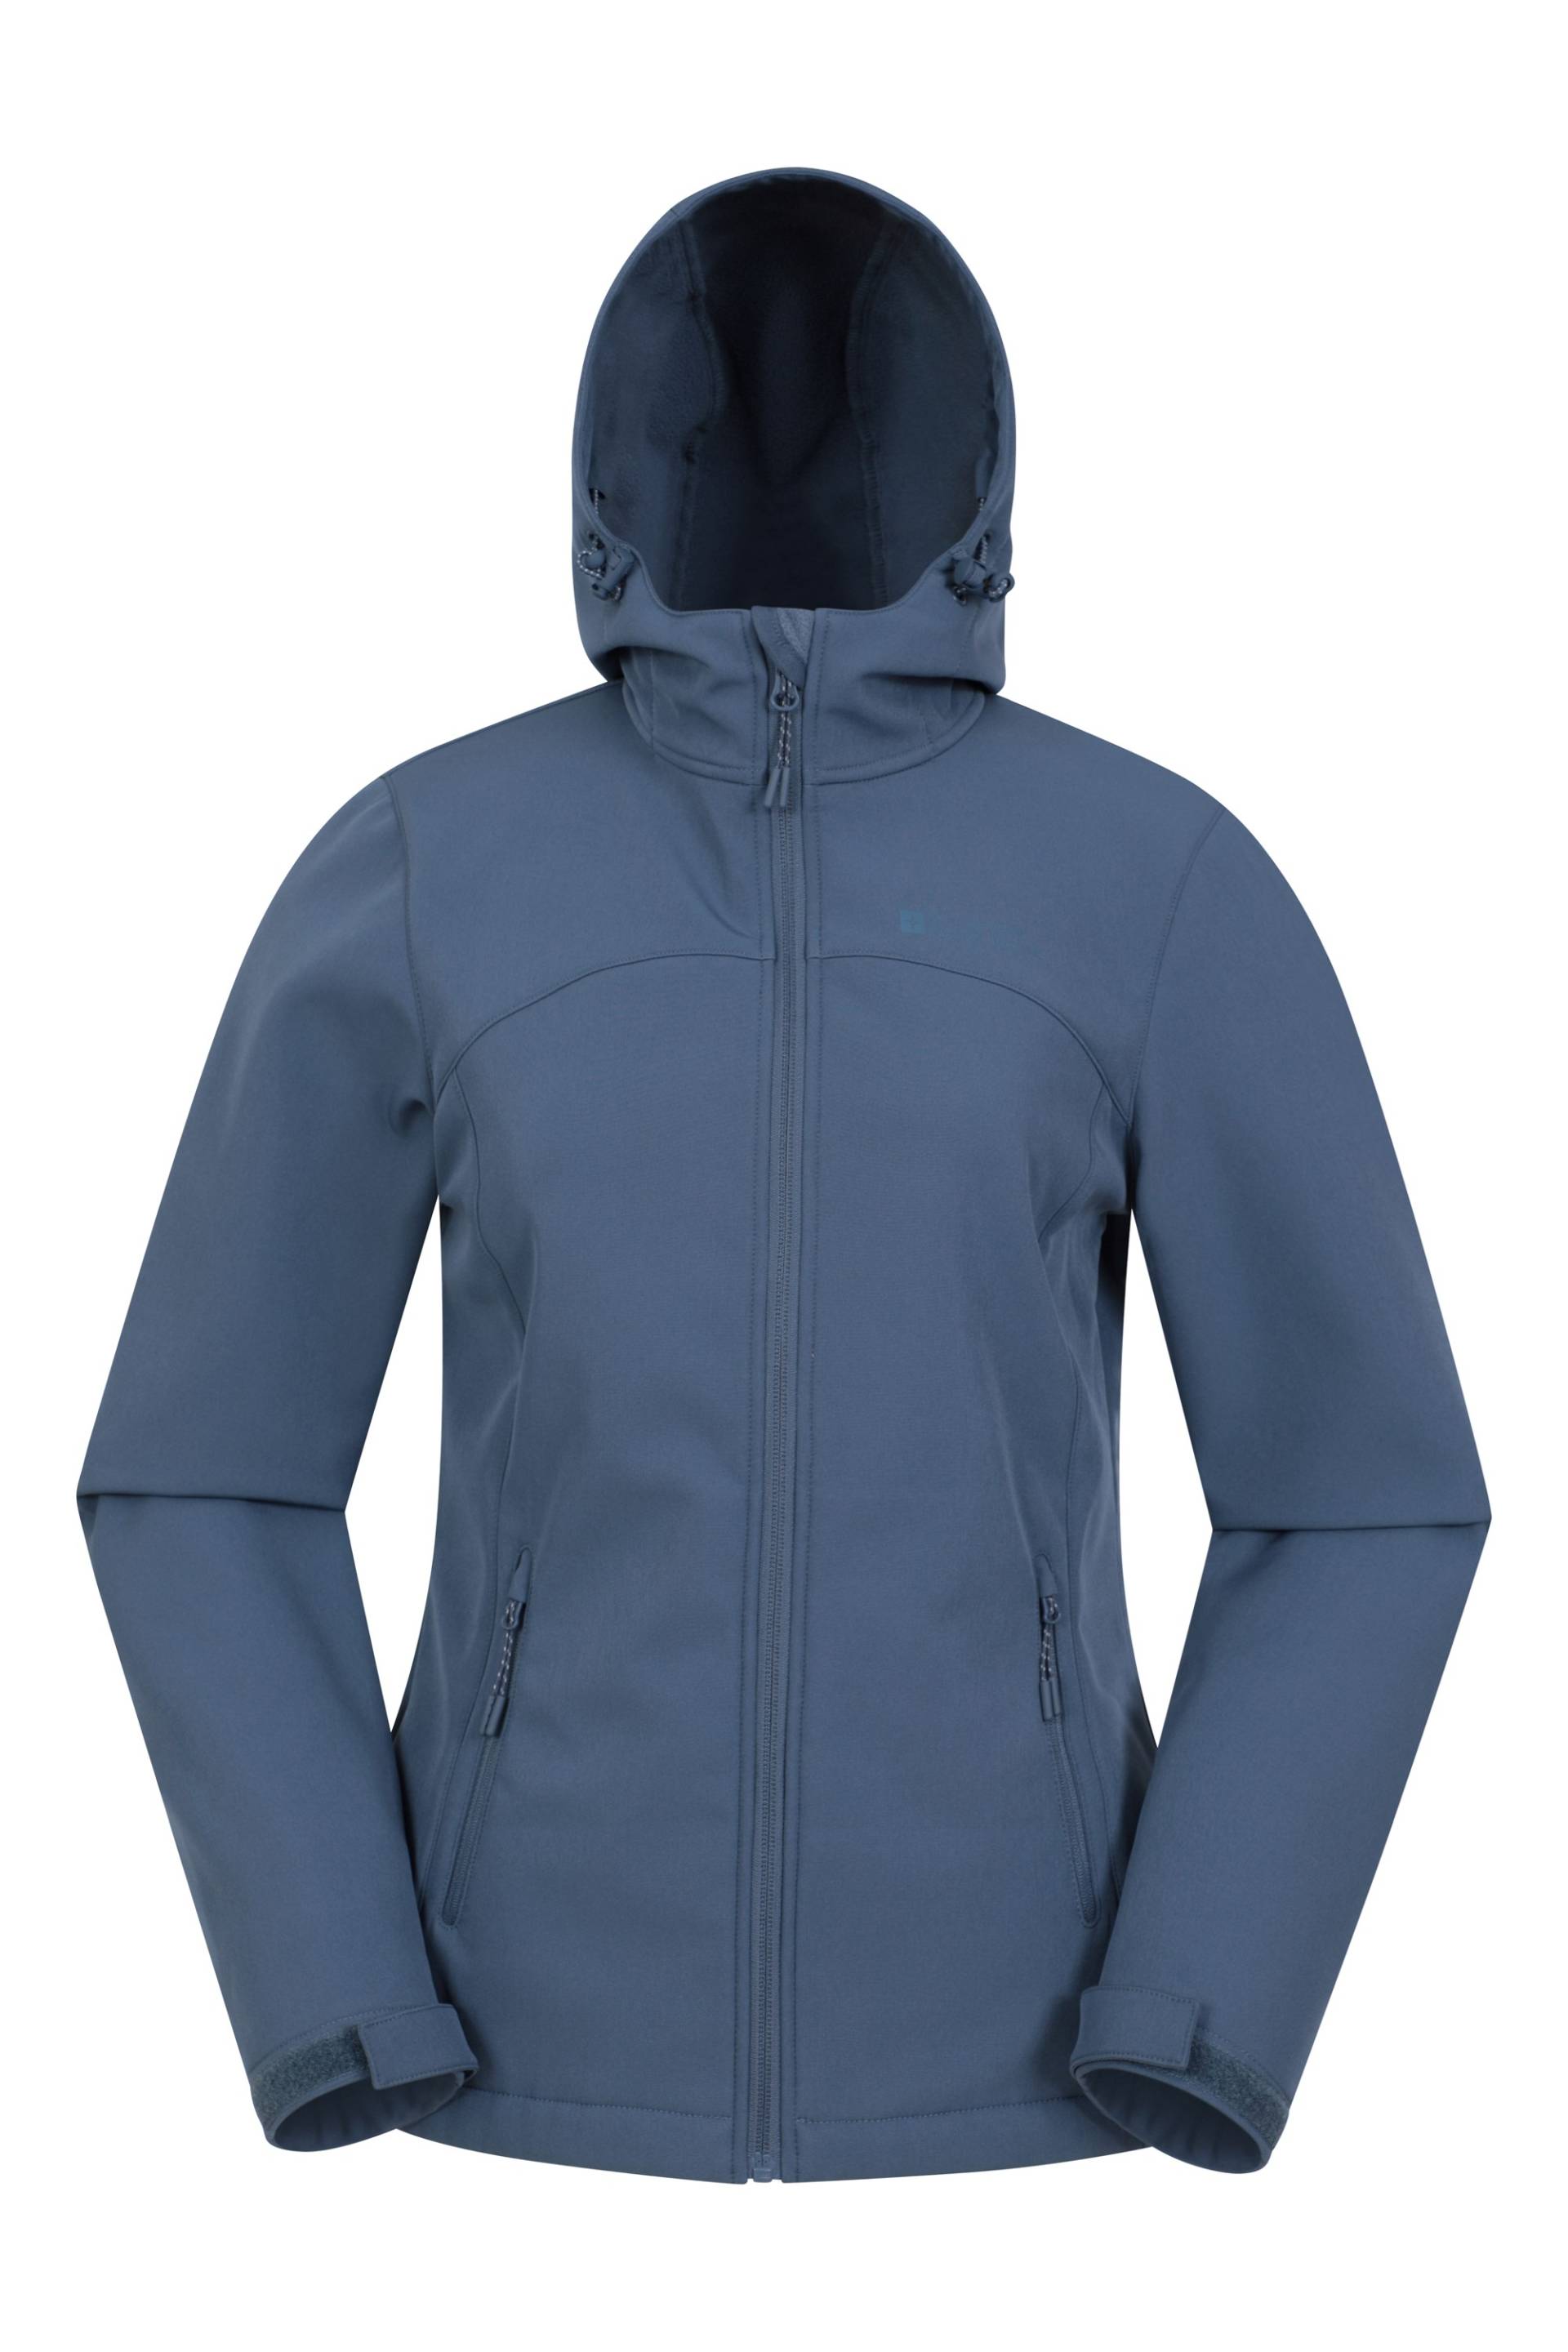 Exodus Bedruckte Softshell-Jacke für Damen - Dark Blau von Mountain Warehouse